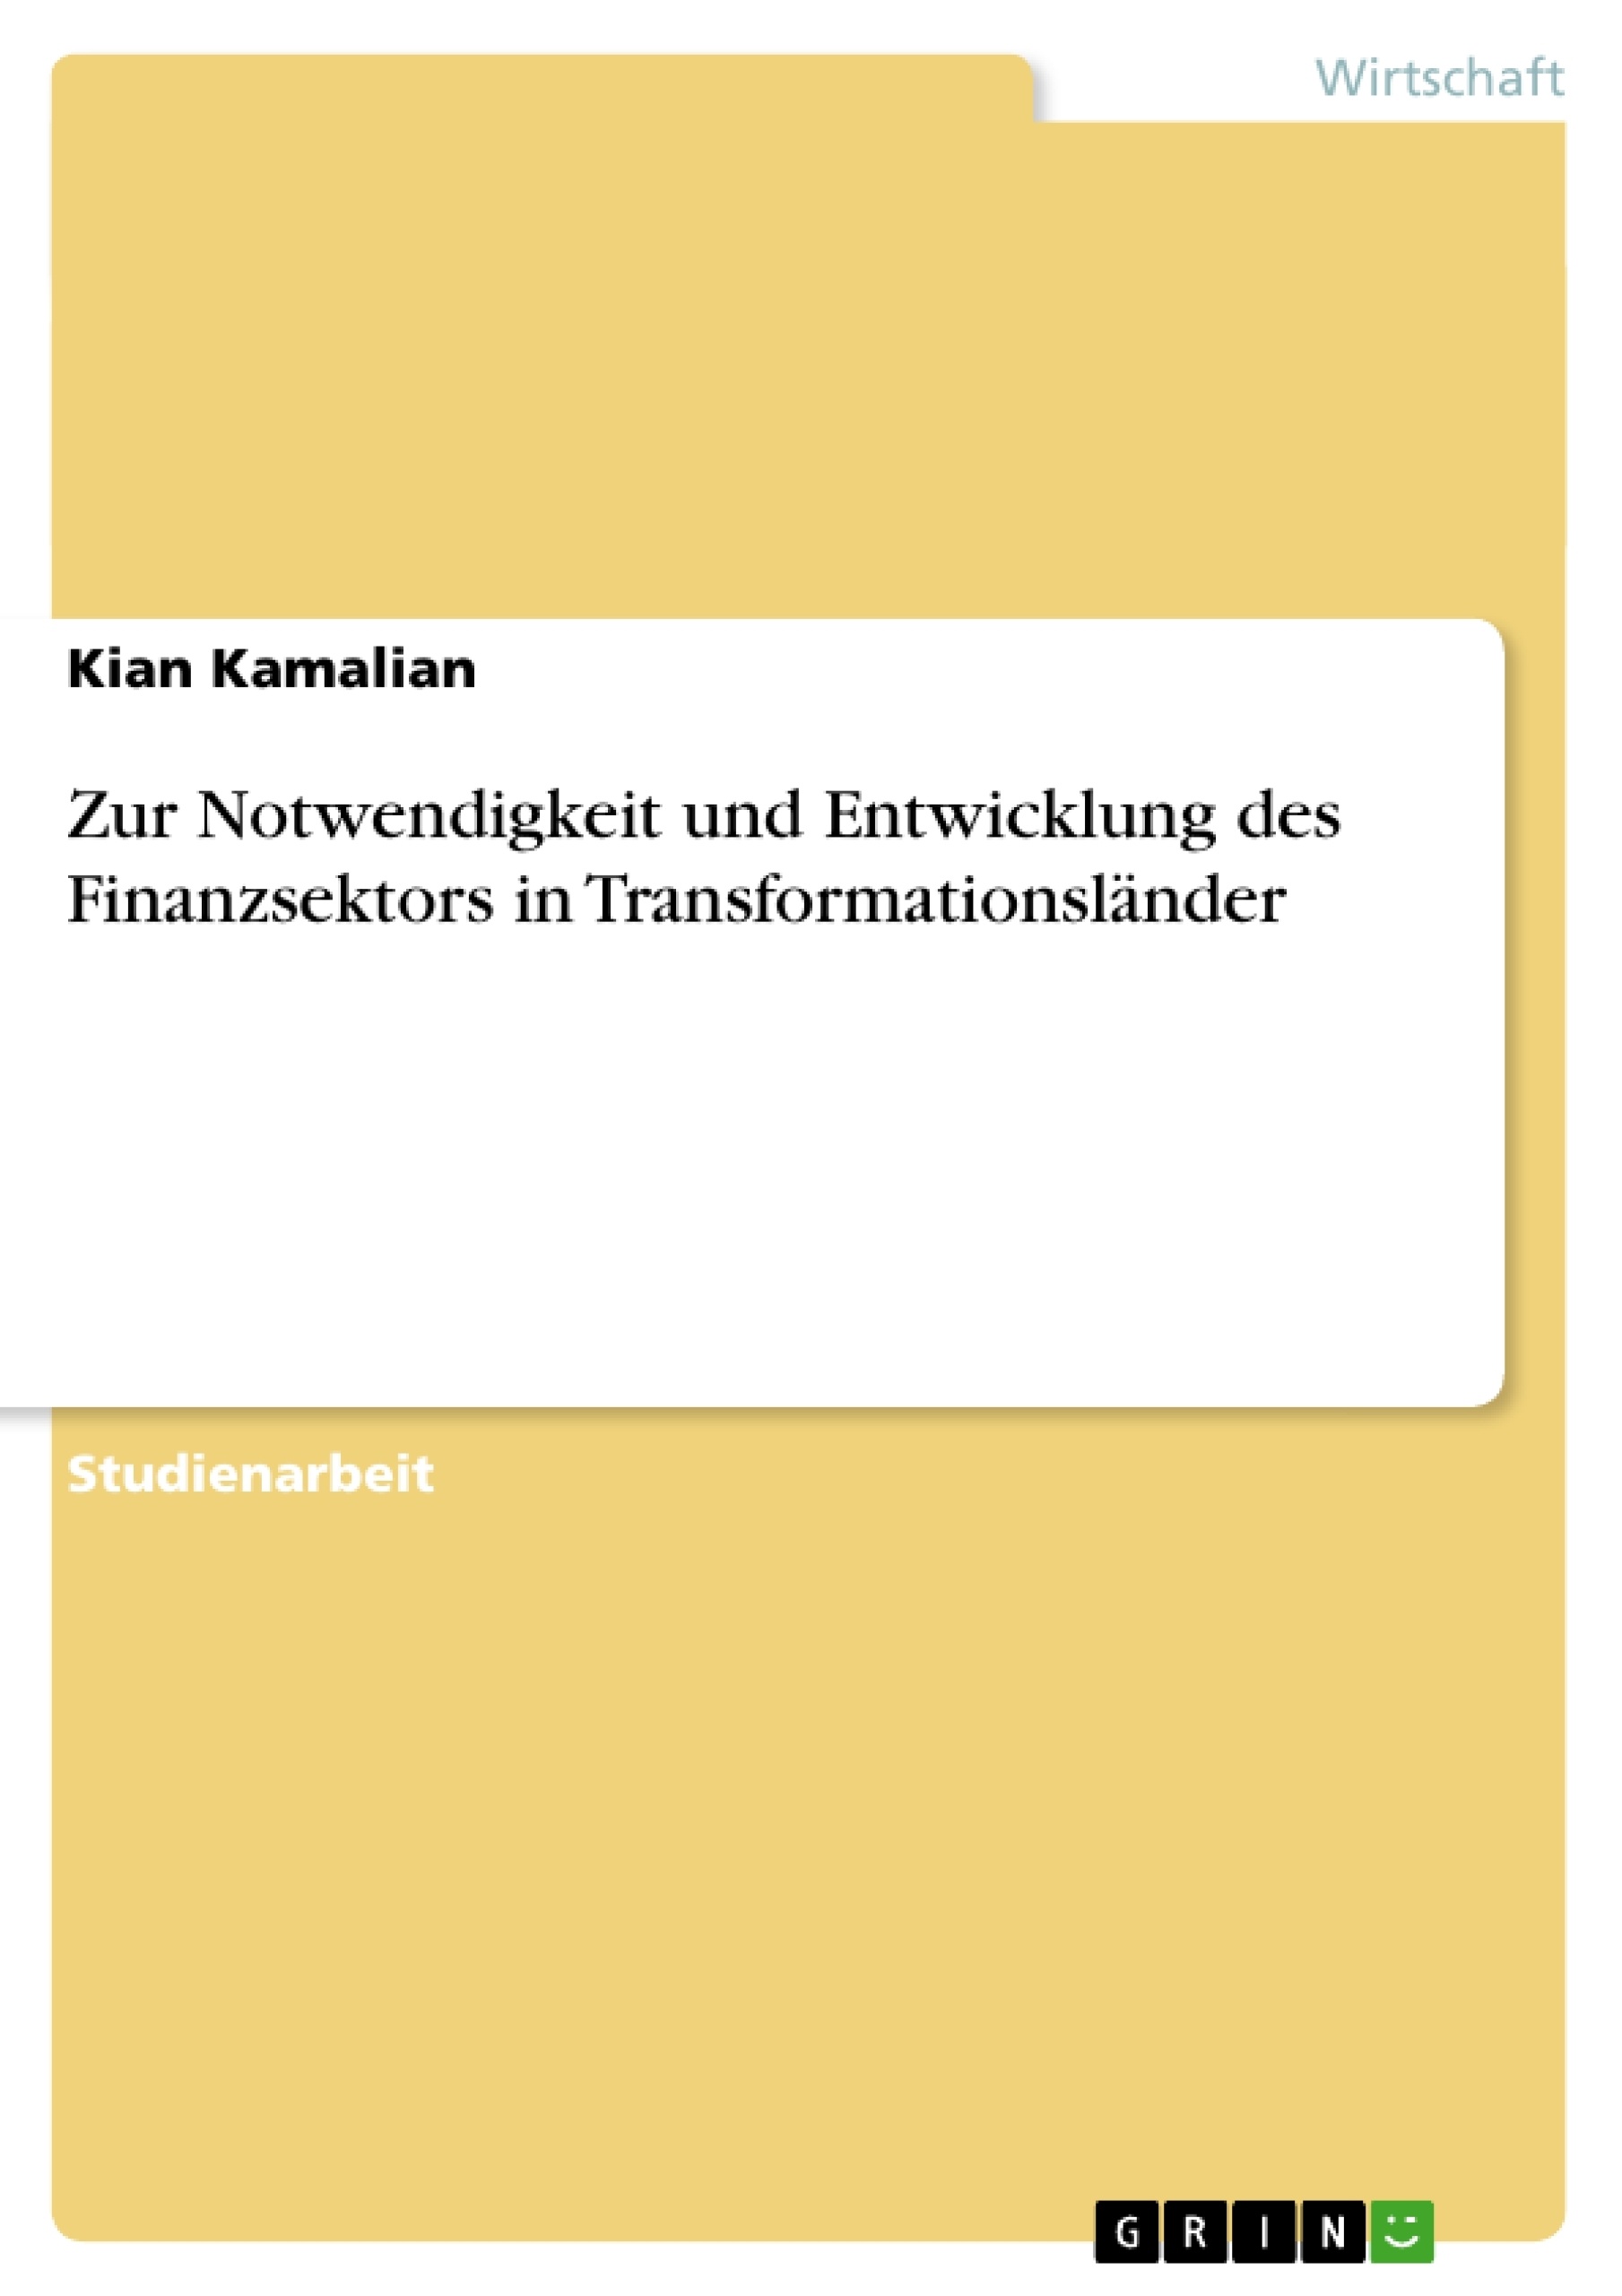 Titre: Zur Notwendigkeit und Entwicklung des Finanzsektors in Transformationsländer